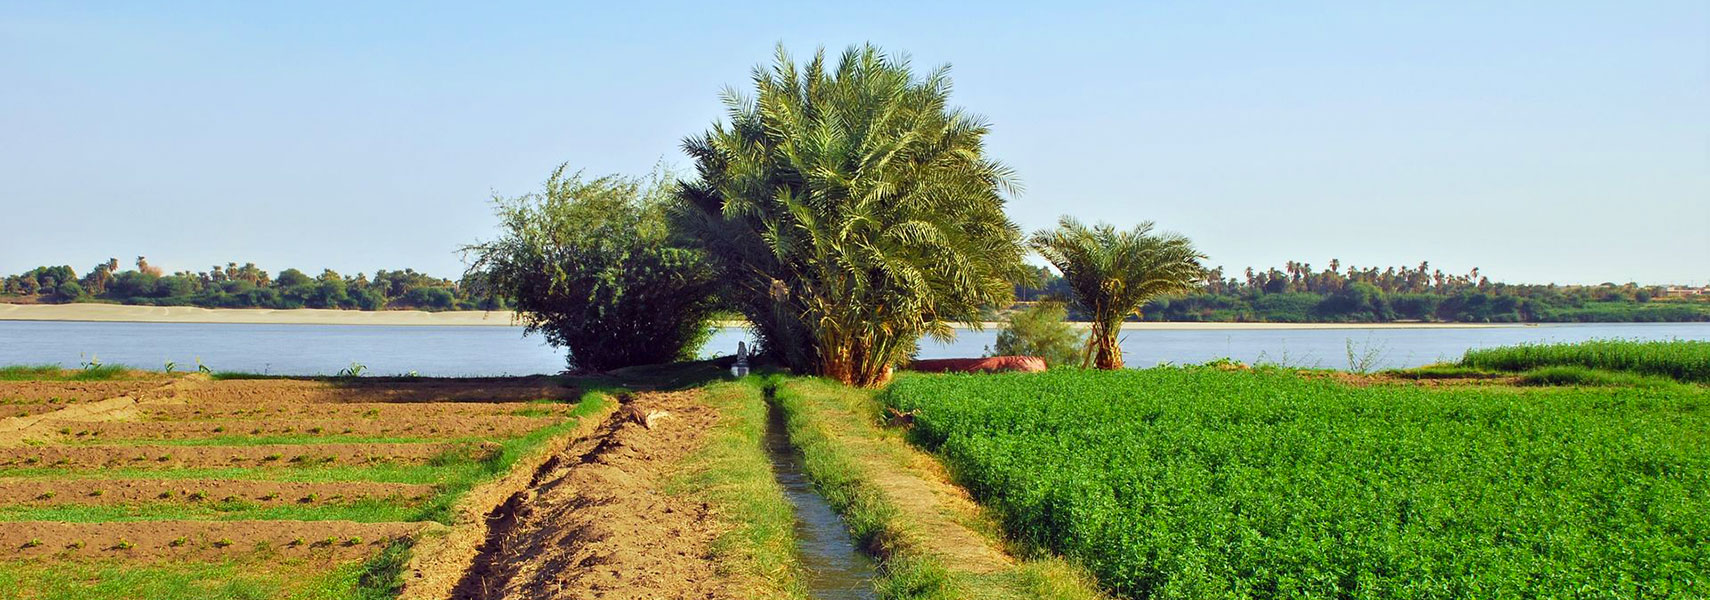 Nile river near Karima, Sudan